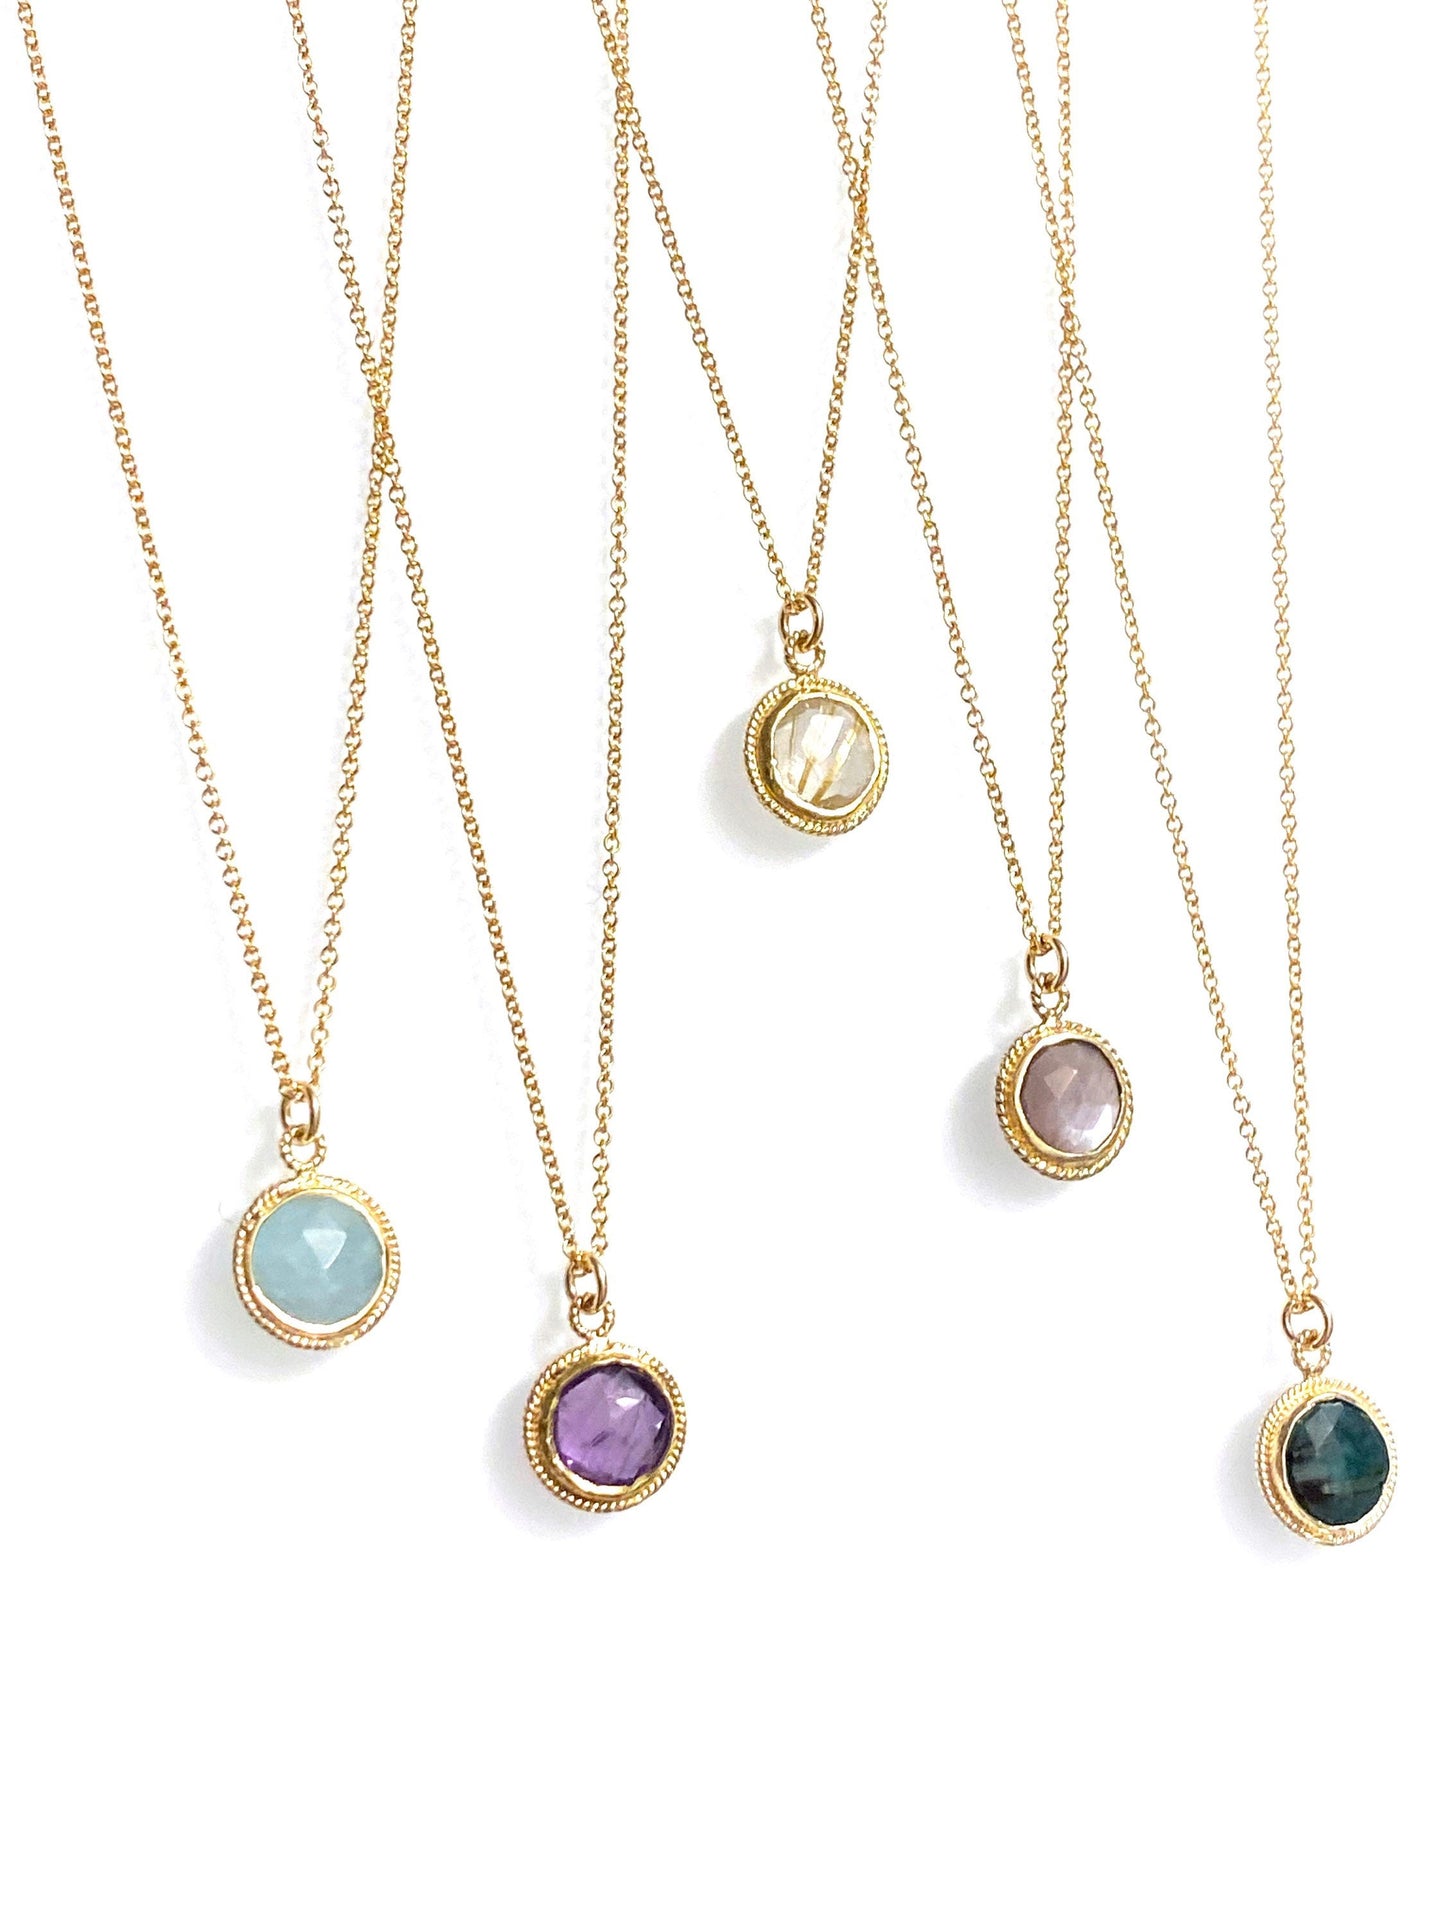 Petite sun medallions (emerald, aquamarine, amethyst, golden rutilated quartz, chocolate moonstone)